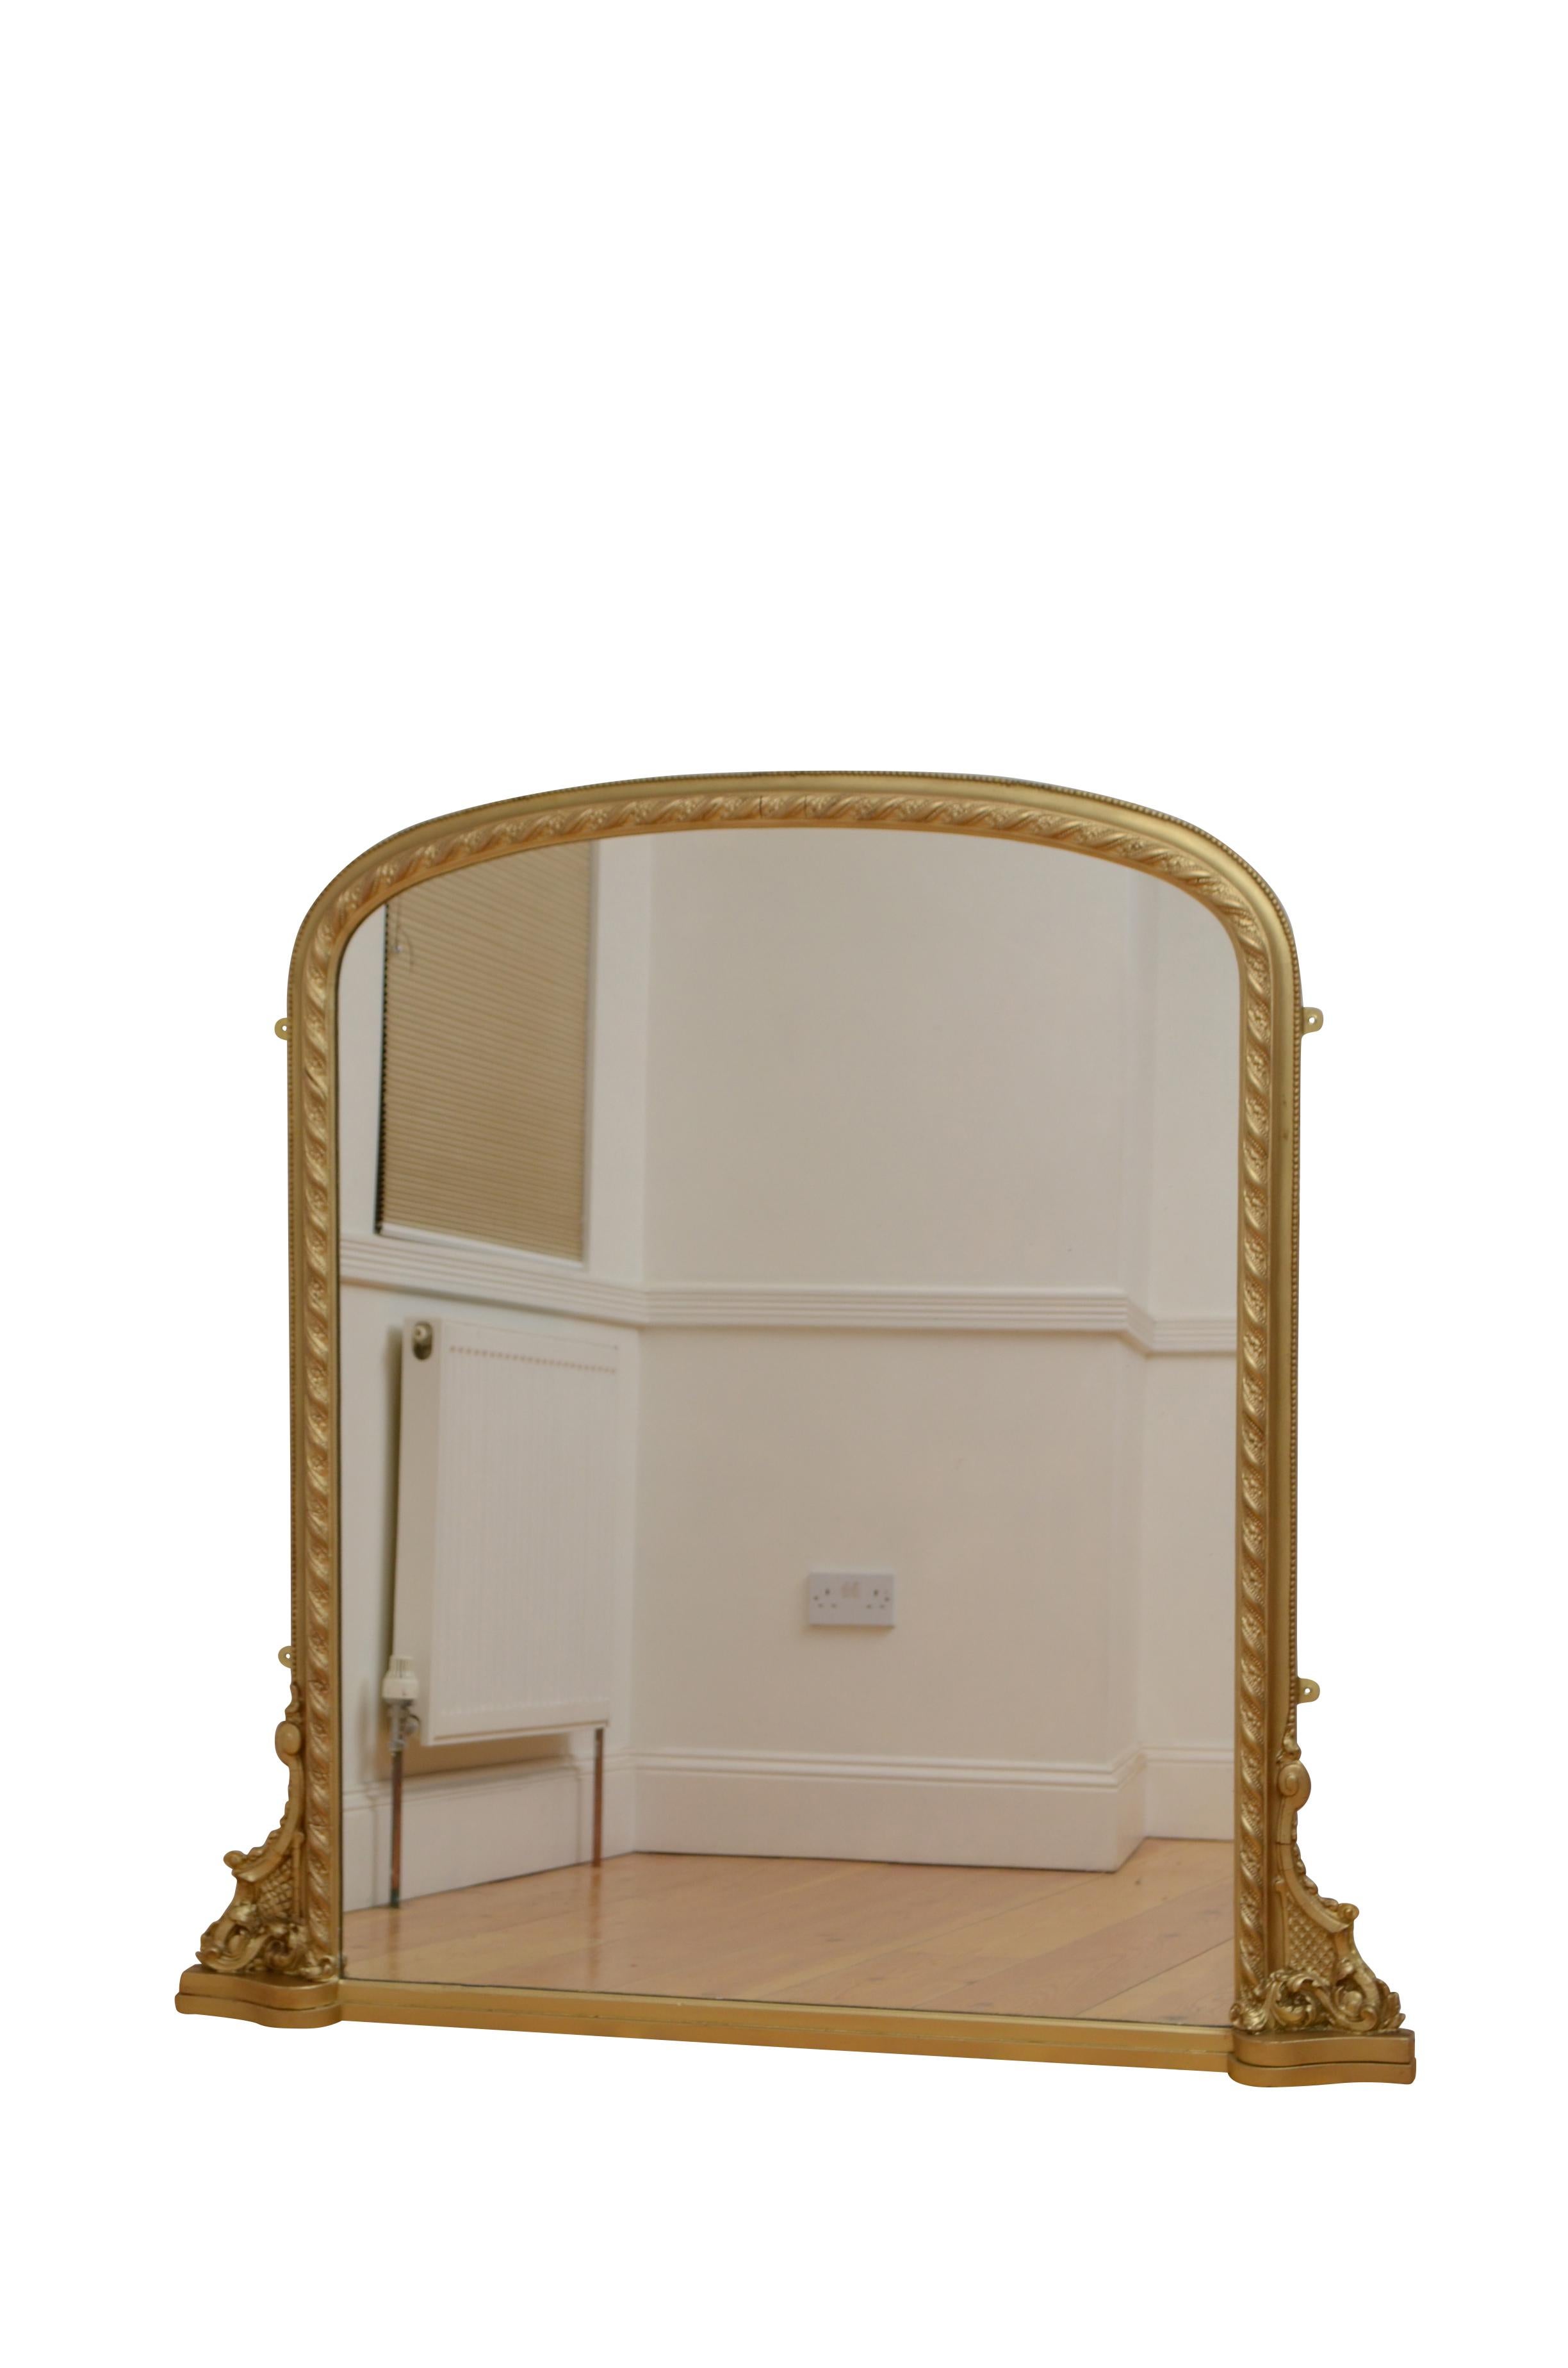 K0553 Englischer viktorianischer Obermantelspiegel mit einem Ersatzglas in einem perlenbesetzten und geschnitzten Gessorahmen mit Blattrollen an der Basis. Dieser antike Spiegel wurde in der Vergangenheit aufgearbeitet und ist bereit, zu Hause zu